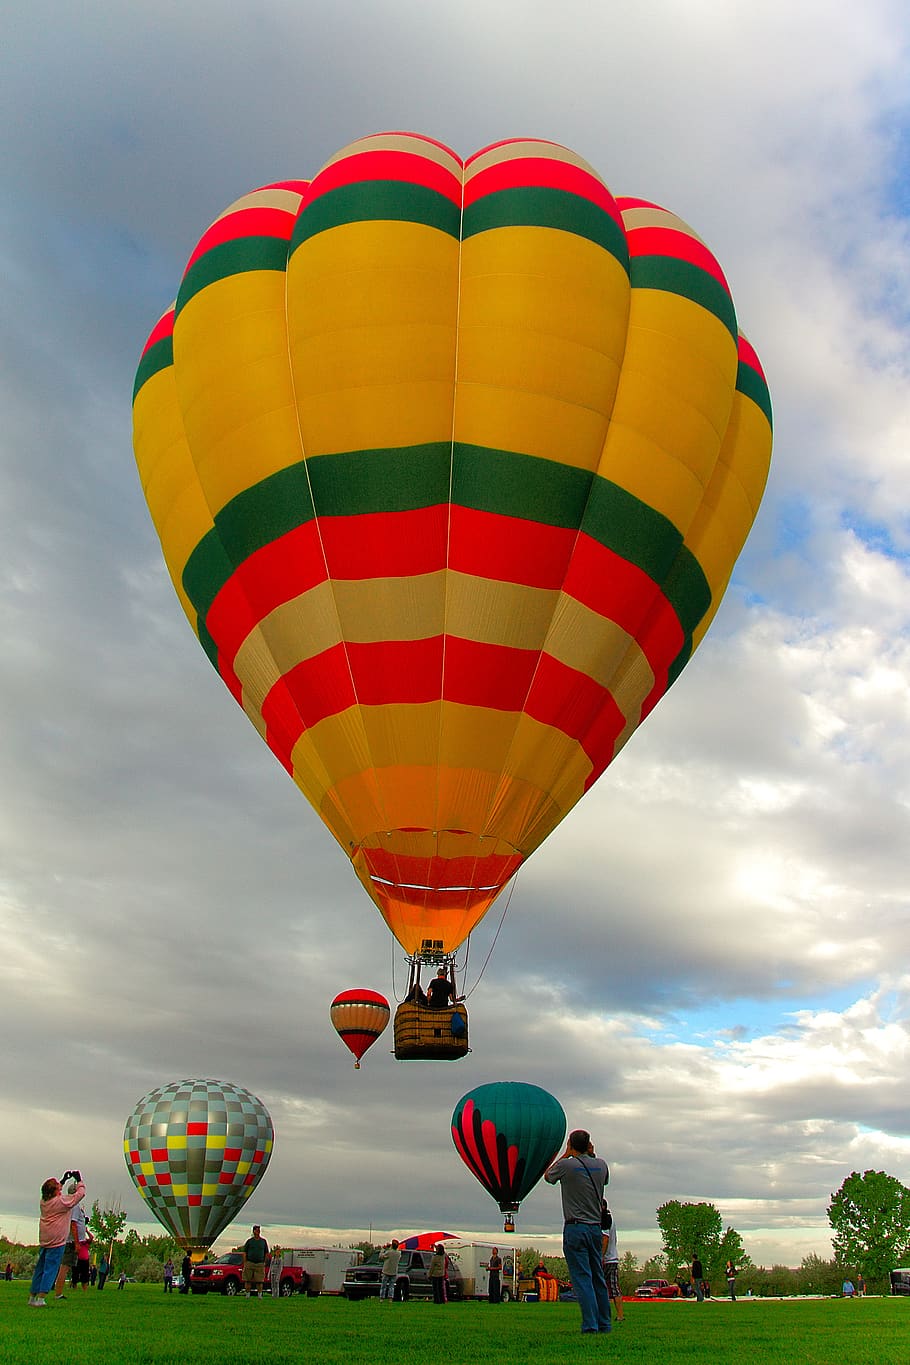 balon, terbang, balon reli, penerbangan, balon udara panas, petualangan, fotografi, langit, awan - langit, kendaraan udara